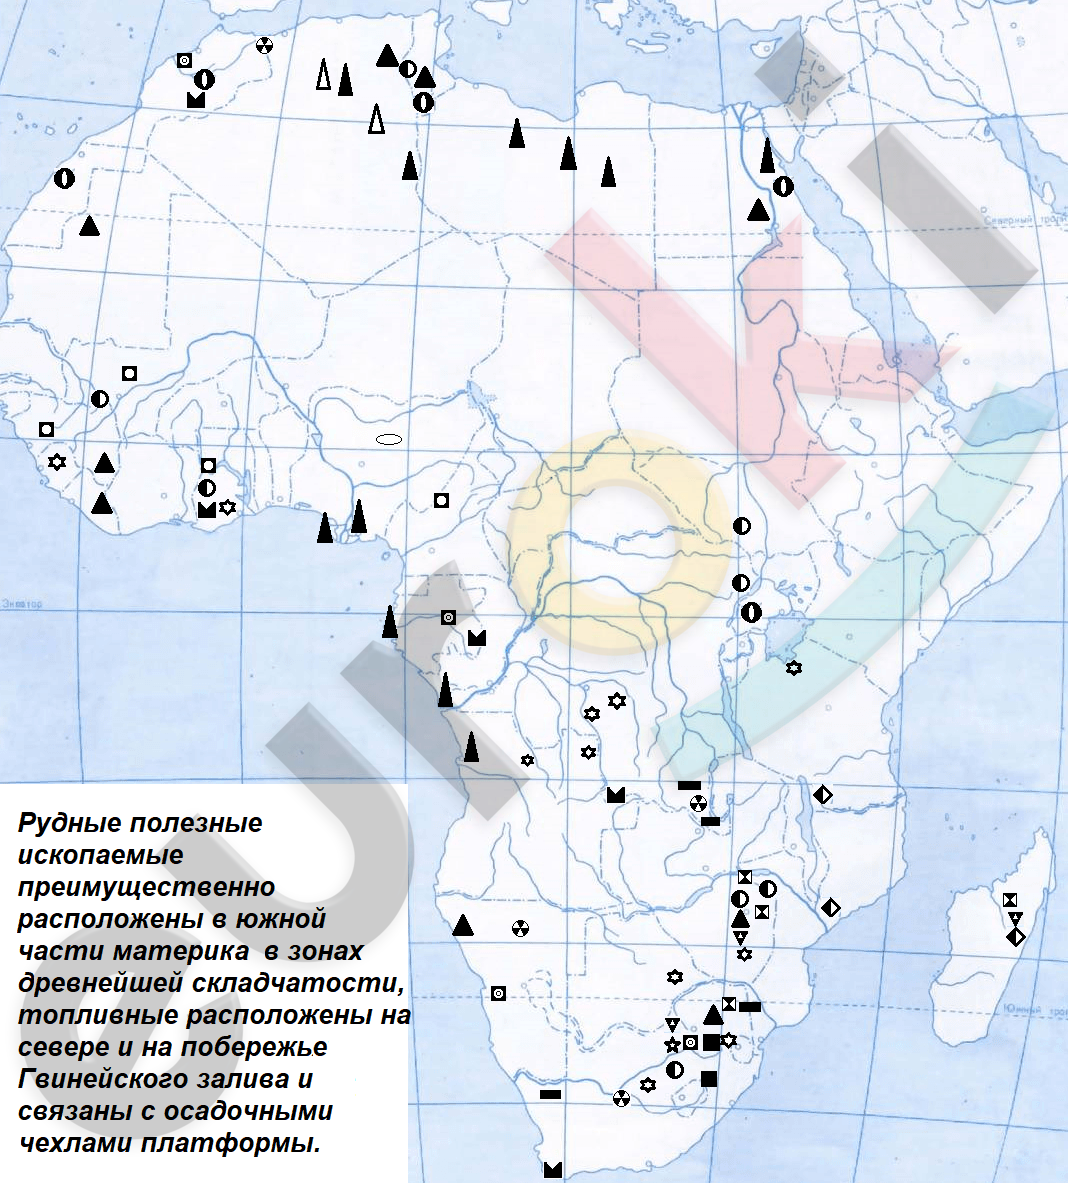 Полезные ископаемые северной америки на контурной карте. Месторождения полезных ископаемых Африки на контурной карте. Полезные ископаемые Африки на контурной карте. Африка месторождения полезных ископаемых карта. Крупнейшие месторождения полезных ископаемых Африки на карте.